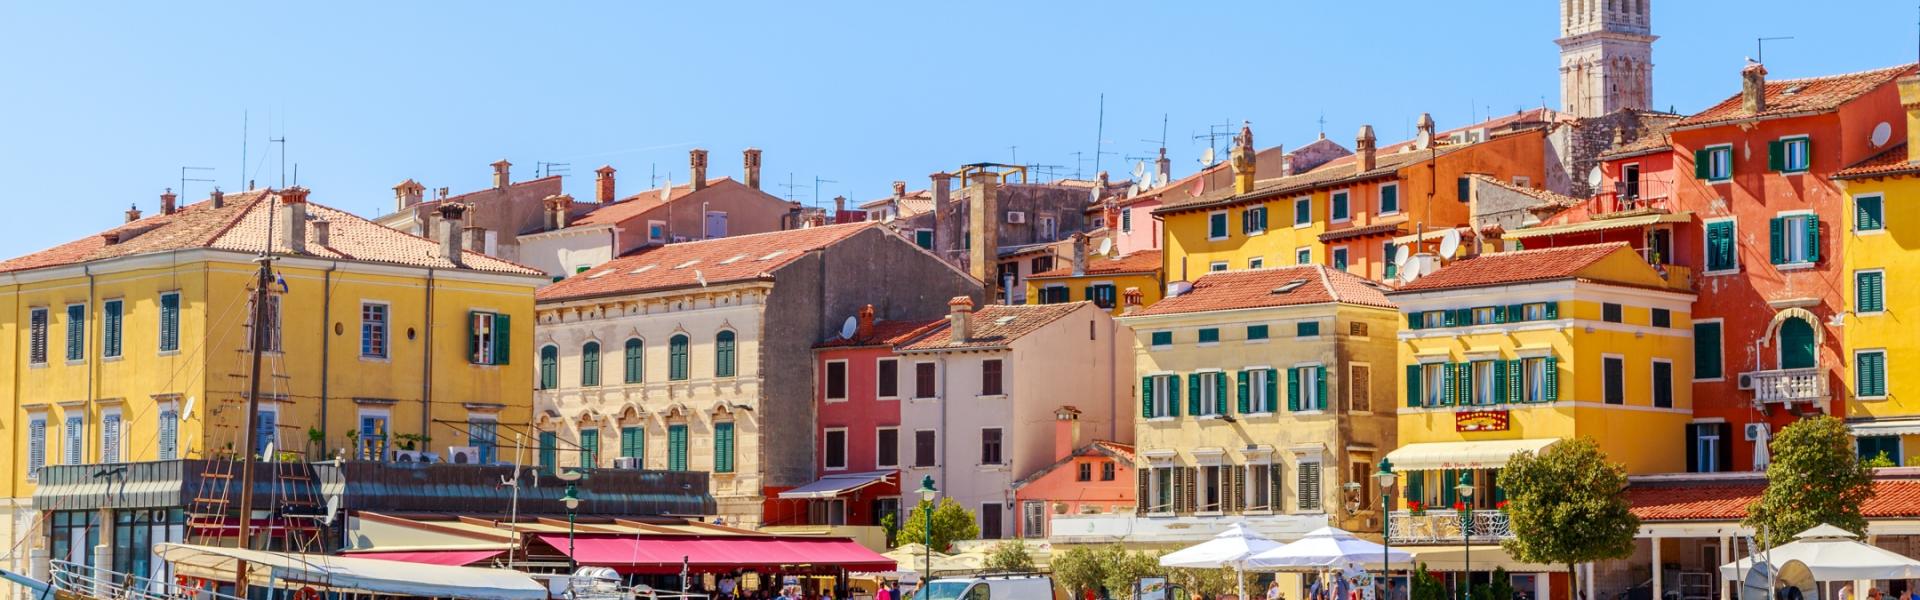 Uw vakantiehuis in Istrië voor een stralende zonvakantie - Casamundo